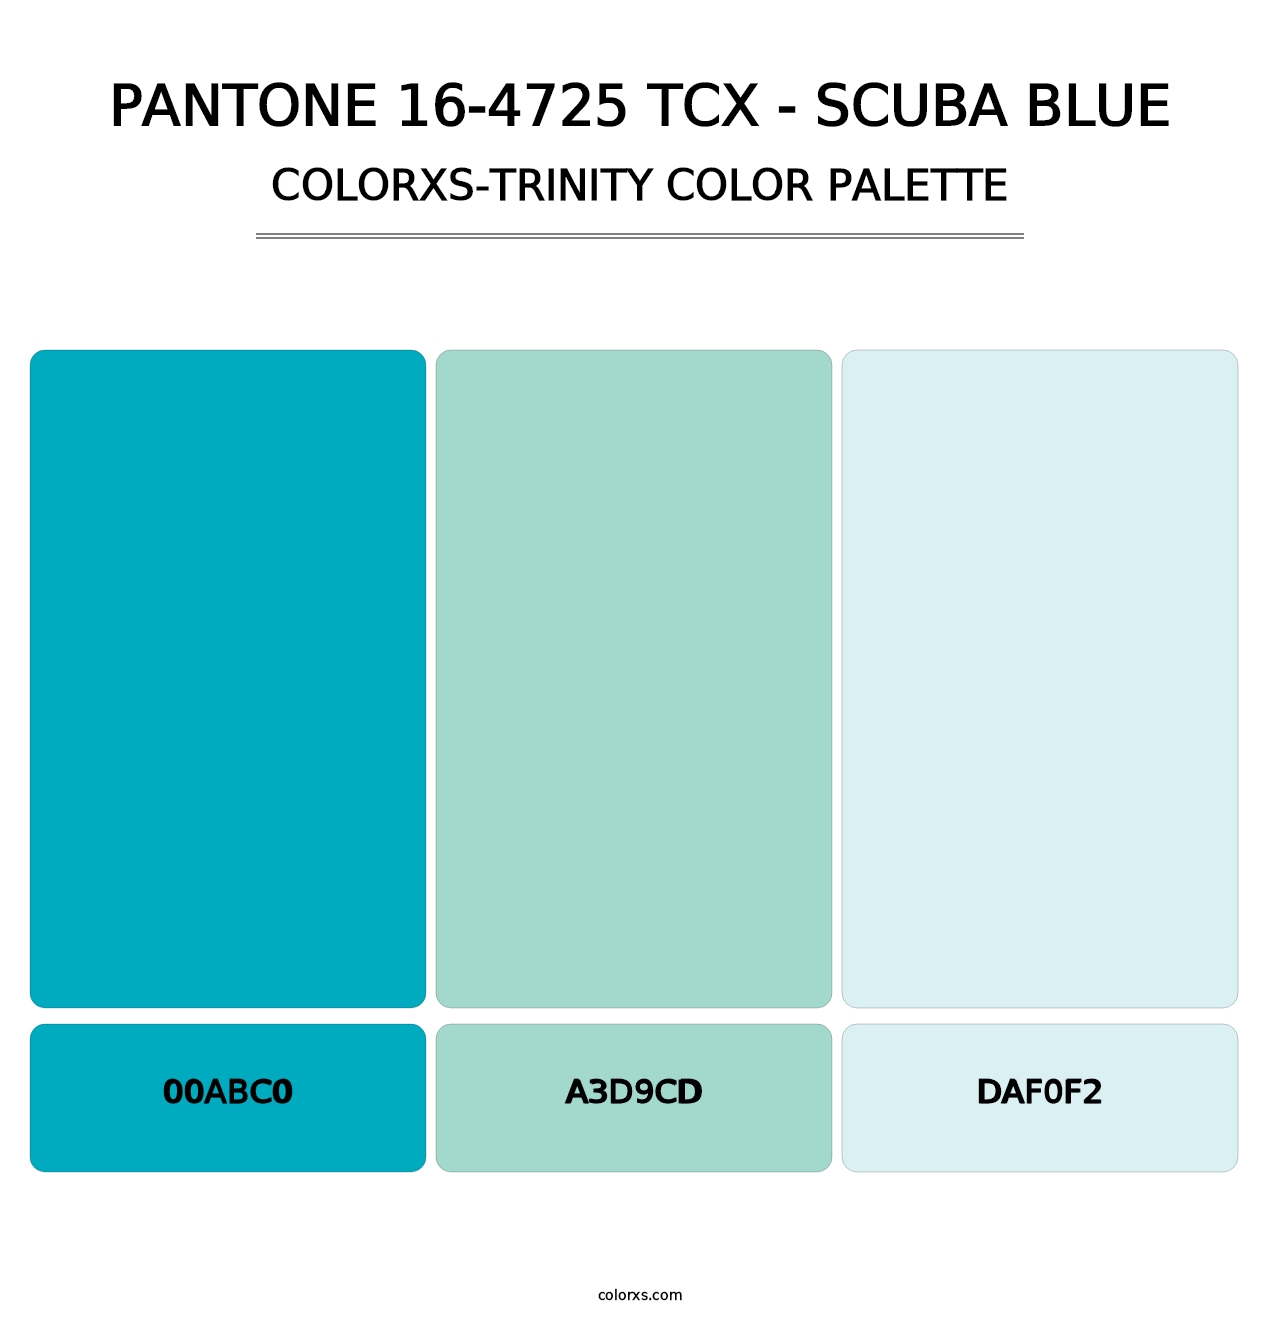 PANTONE 16-4725 TCX - Scuba Blue - Colorxs Trinity Palette